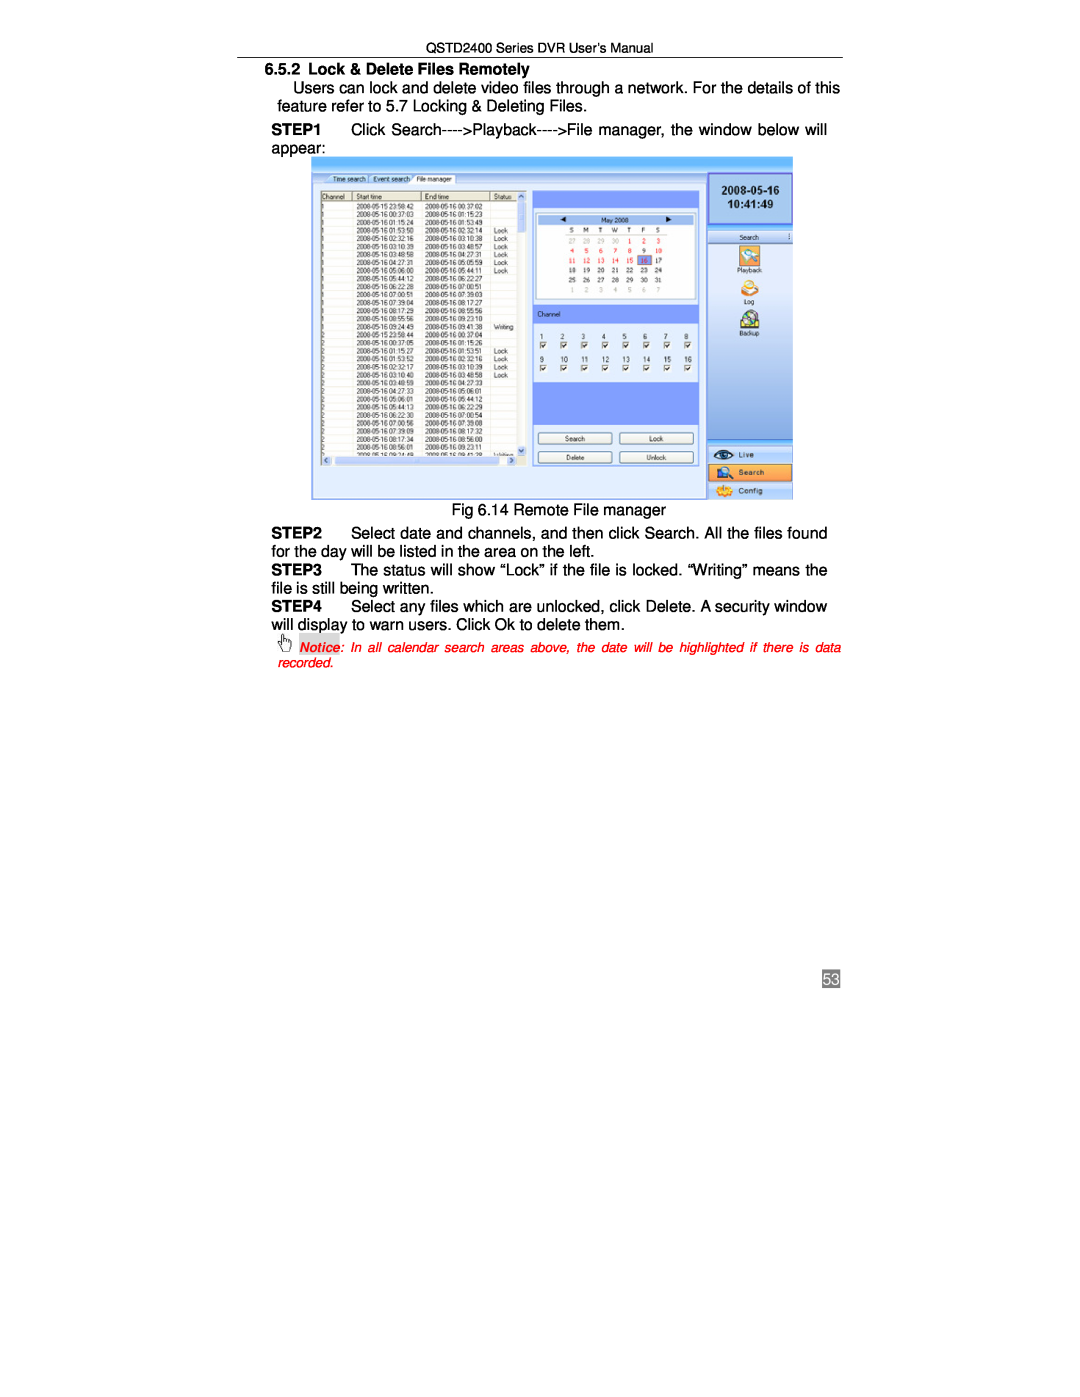 Q-See QSTD2416, QSTD2408, QSTD2404 user manual Lock & Delete Files Remotely 